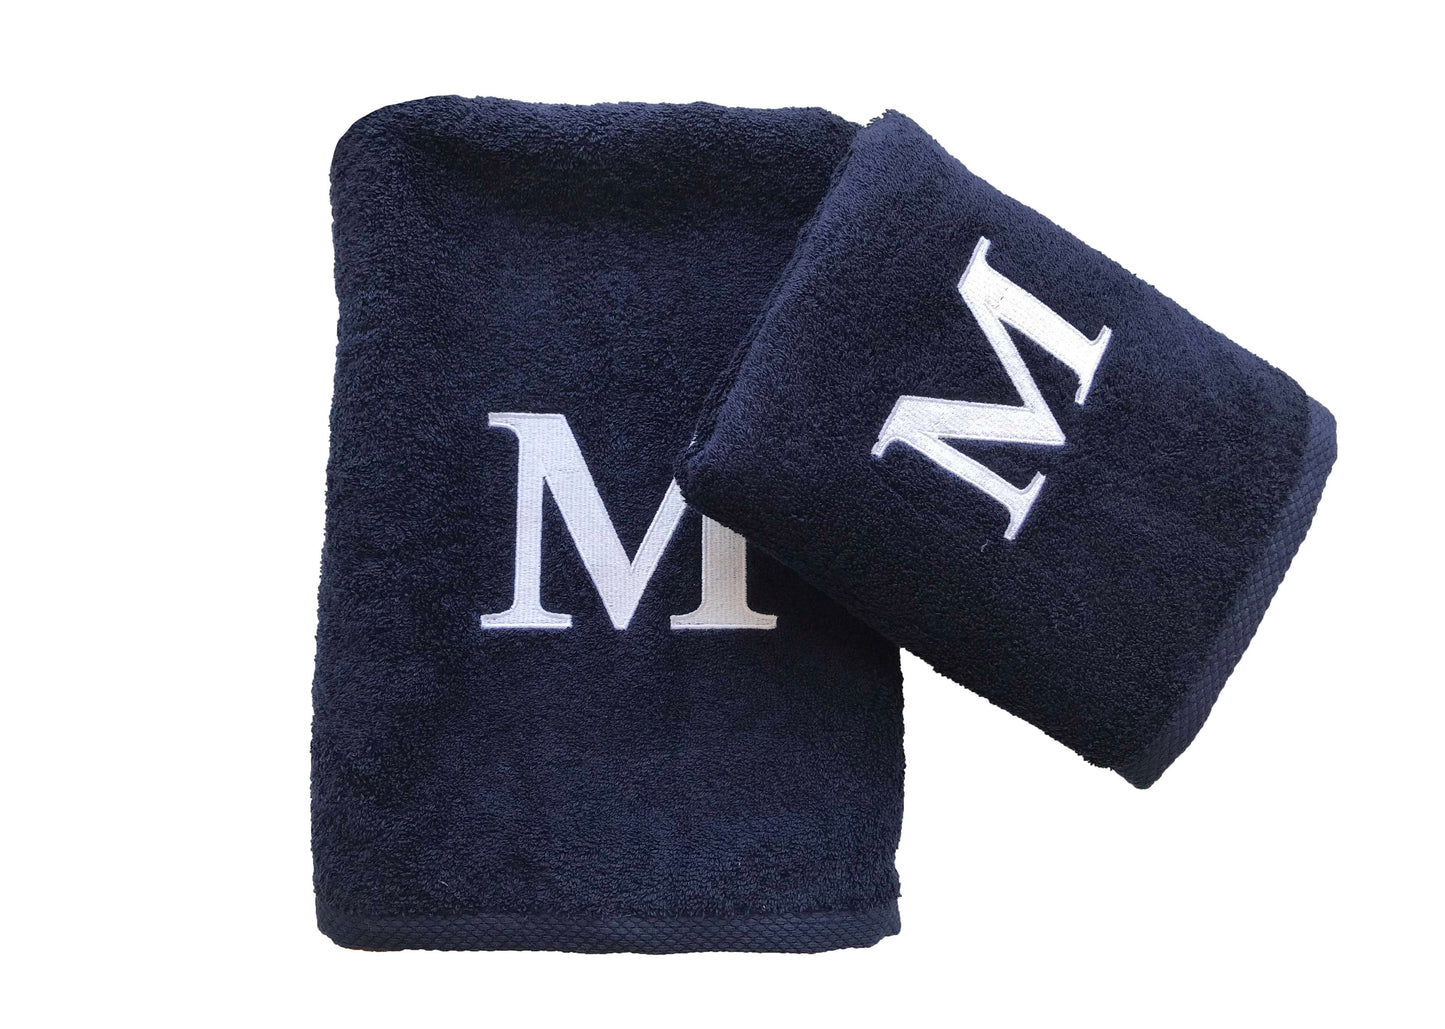 Premium Handtuch -  Mit edler Stickerei Buchstabe "M" - Vielseitig, Nachhaltig, Saugstark & Schnelltrocknend - 100% Baumwolle LMS-6642 Marinenblau